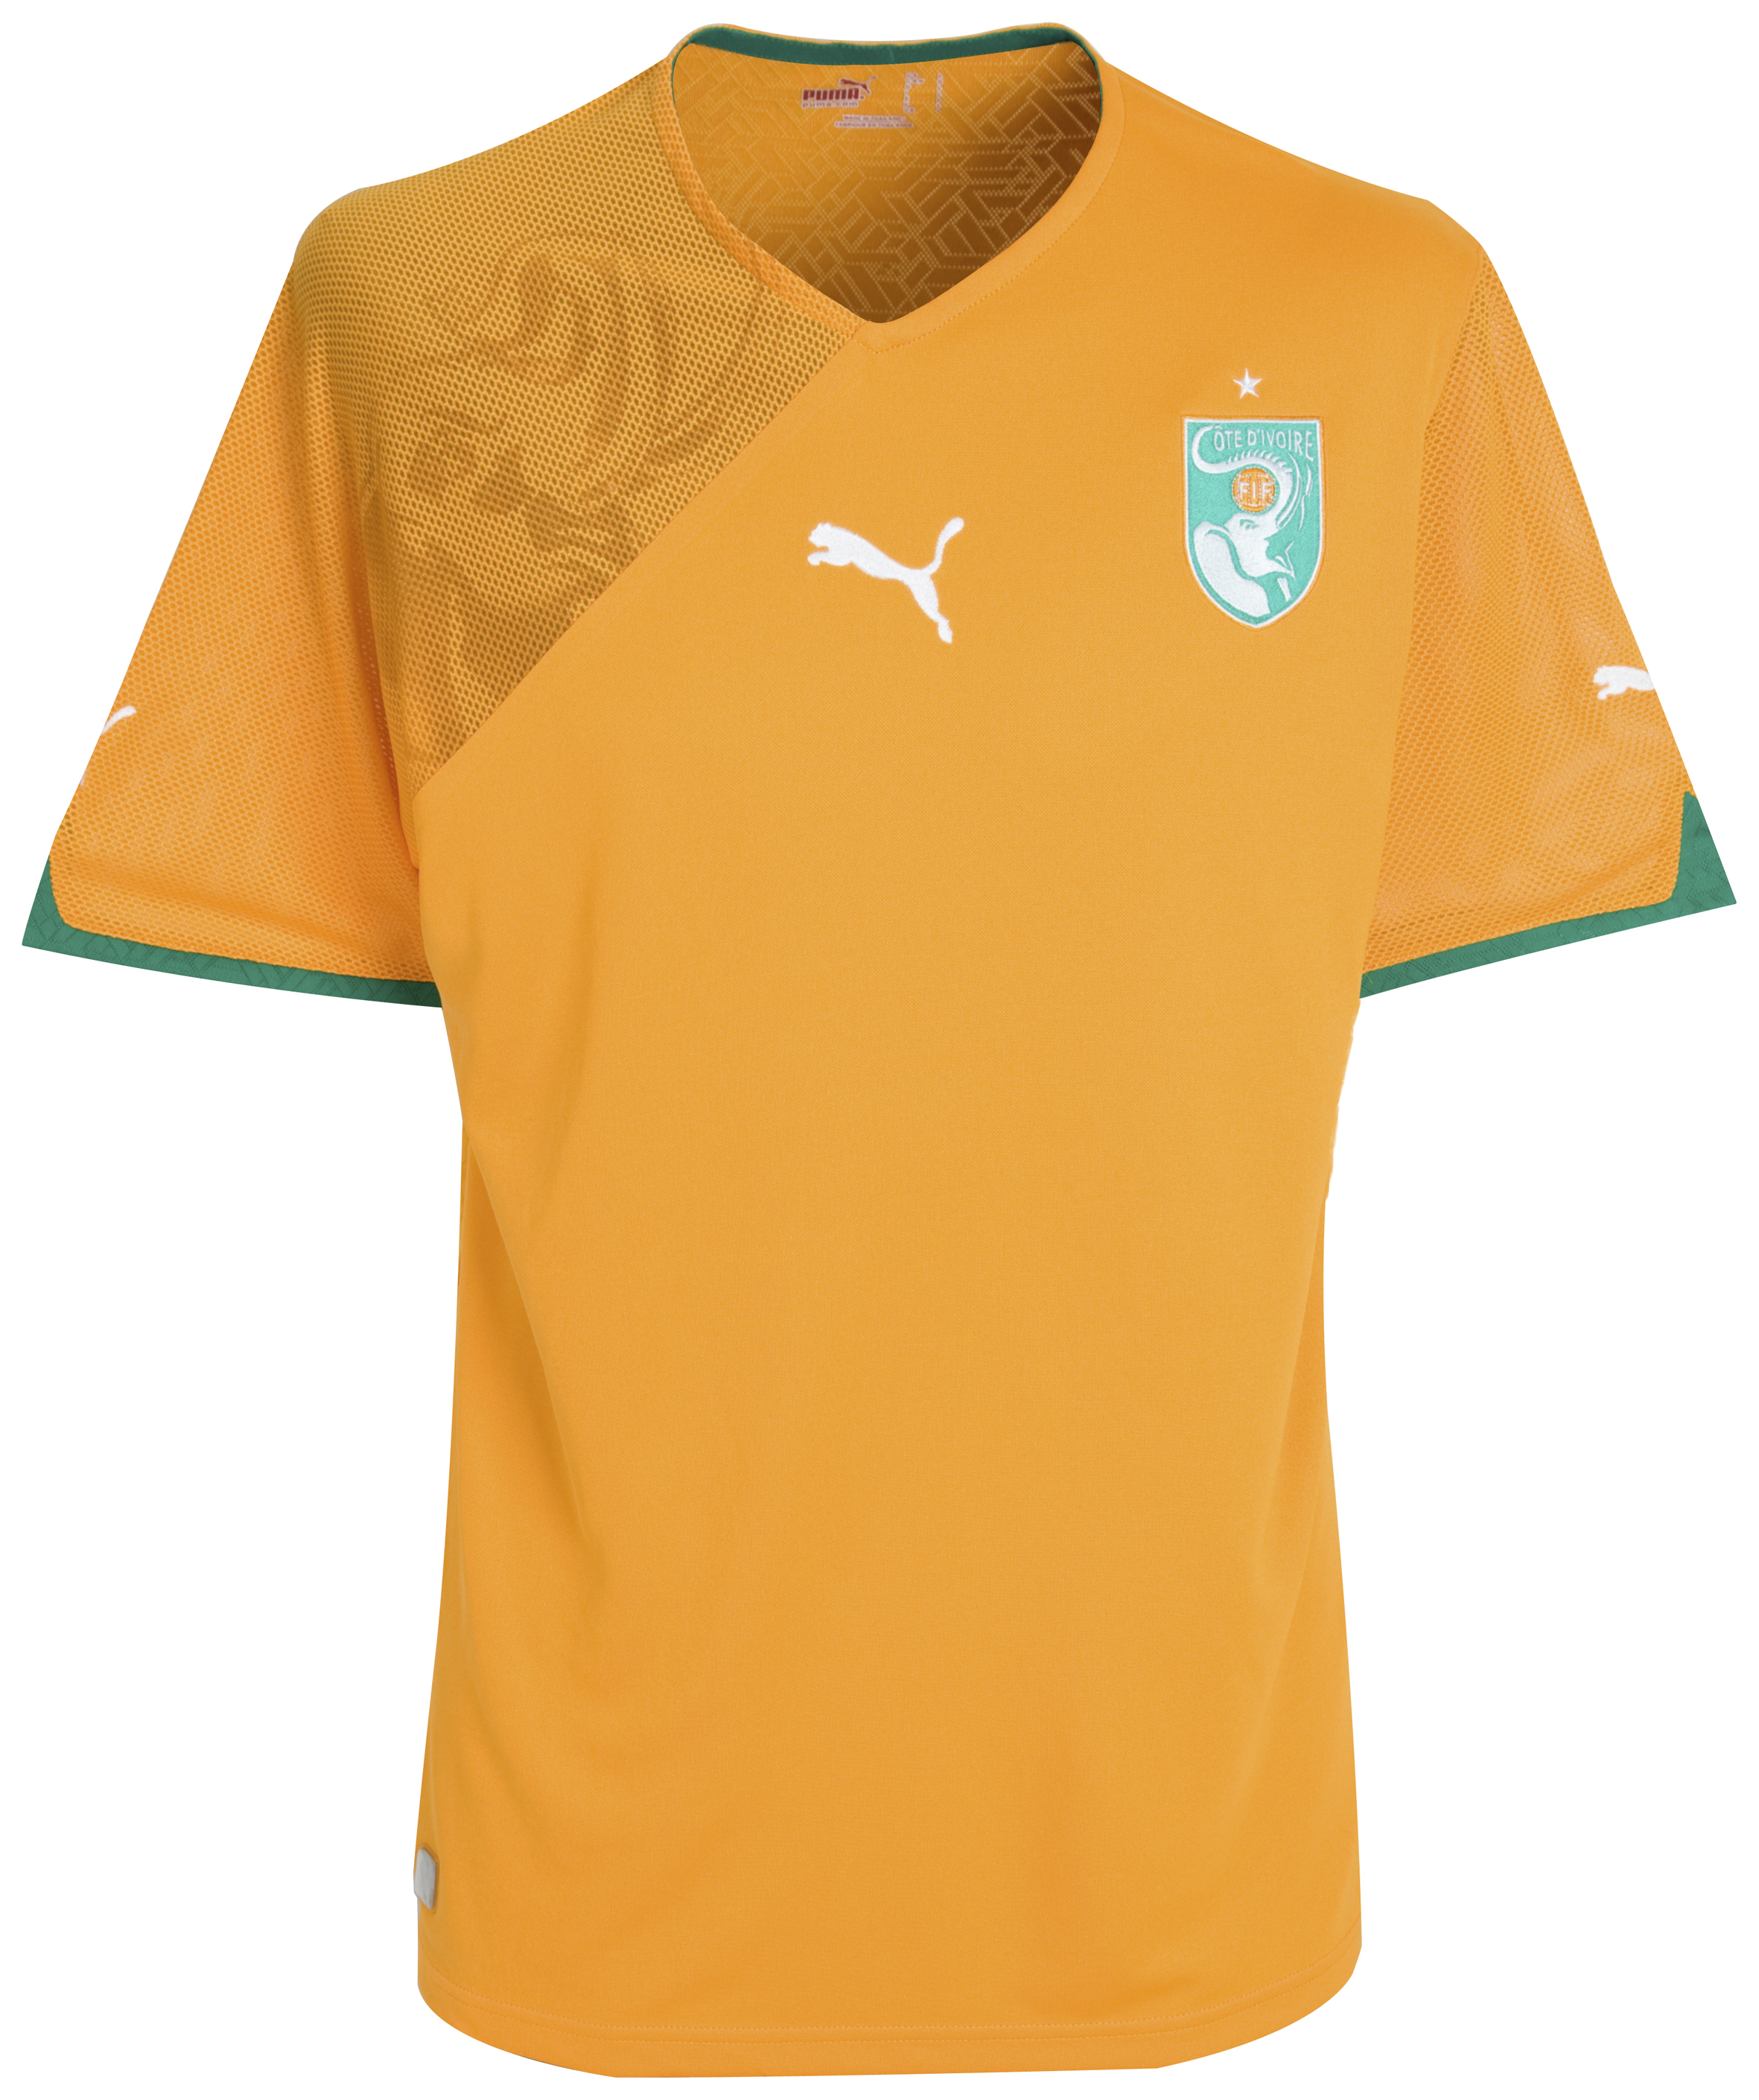 ملابس المنتخبات لكأس العالم ‎(2010)‎ Kb-60875